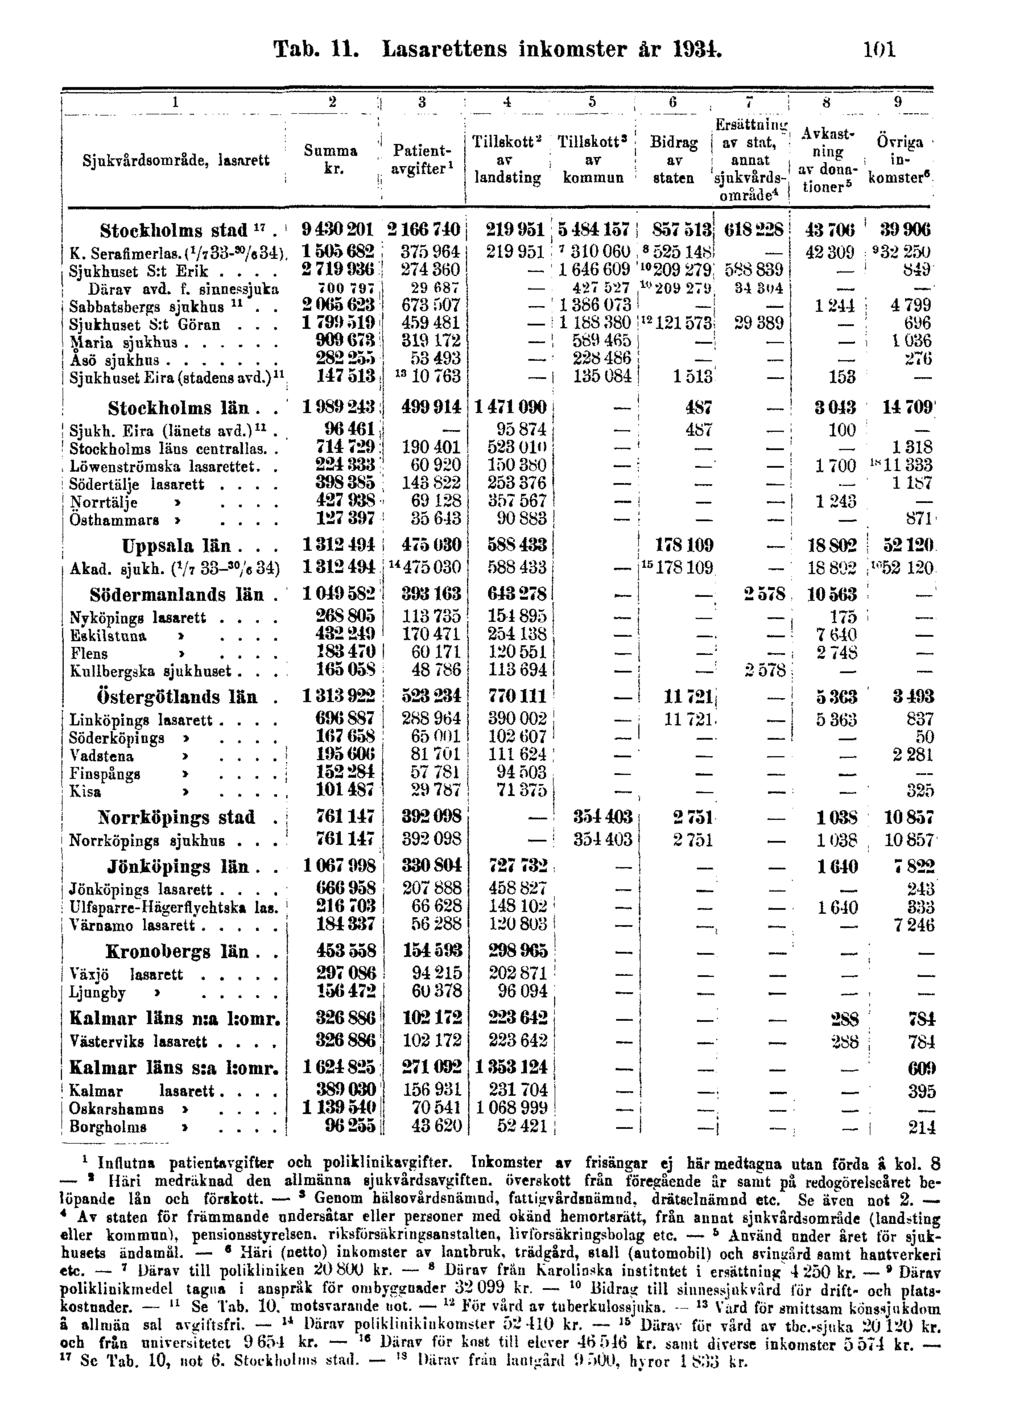 Tab. 11. Lasarettens inkomster år 1934. 101 1 Influtna patientavgifter och poliklinikavgifter. Inkomster av frisängar ej här medtagna utan förda ä kol.